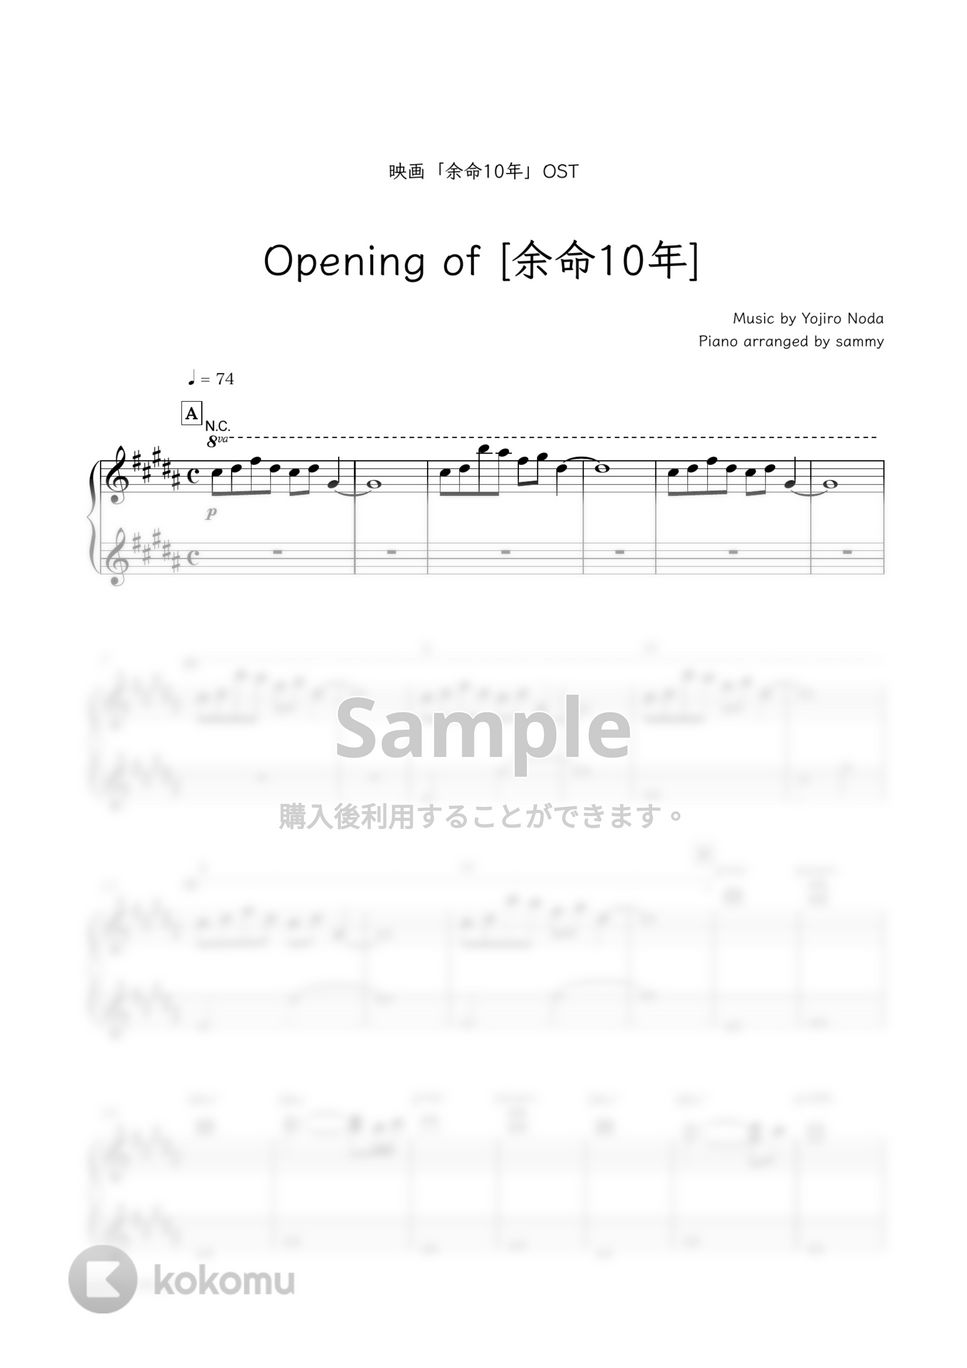 映画「余命10年」OST／RADWIMPS - Opening of [余命10年] by sammy